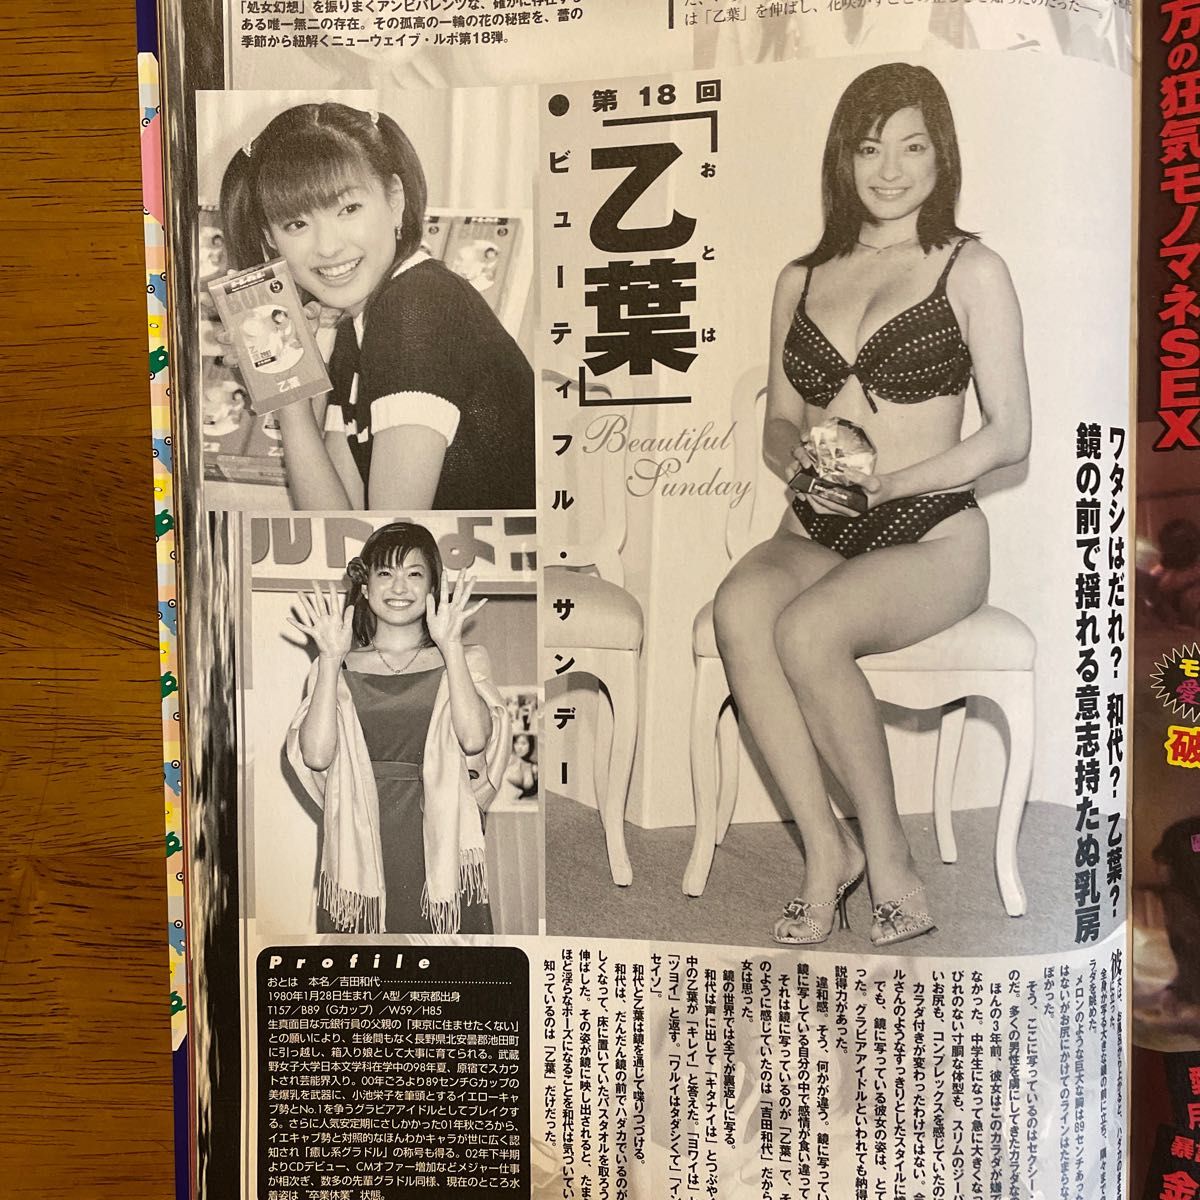 雑誌「あっと・ブブカ」2003年、小倉優子映像などCD-ROM 2 枚付き